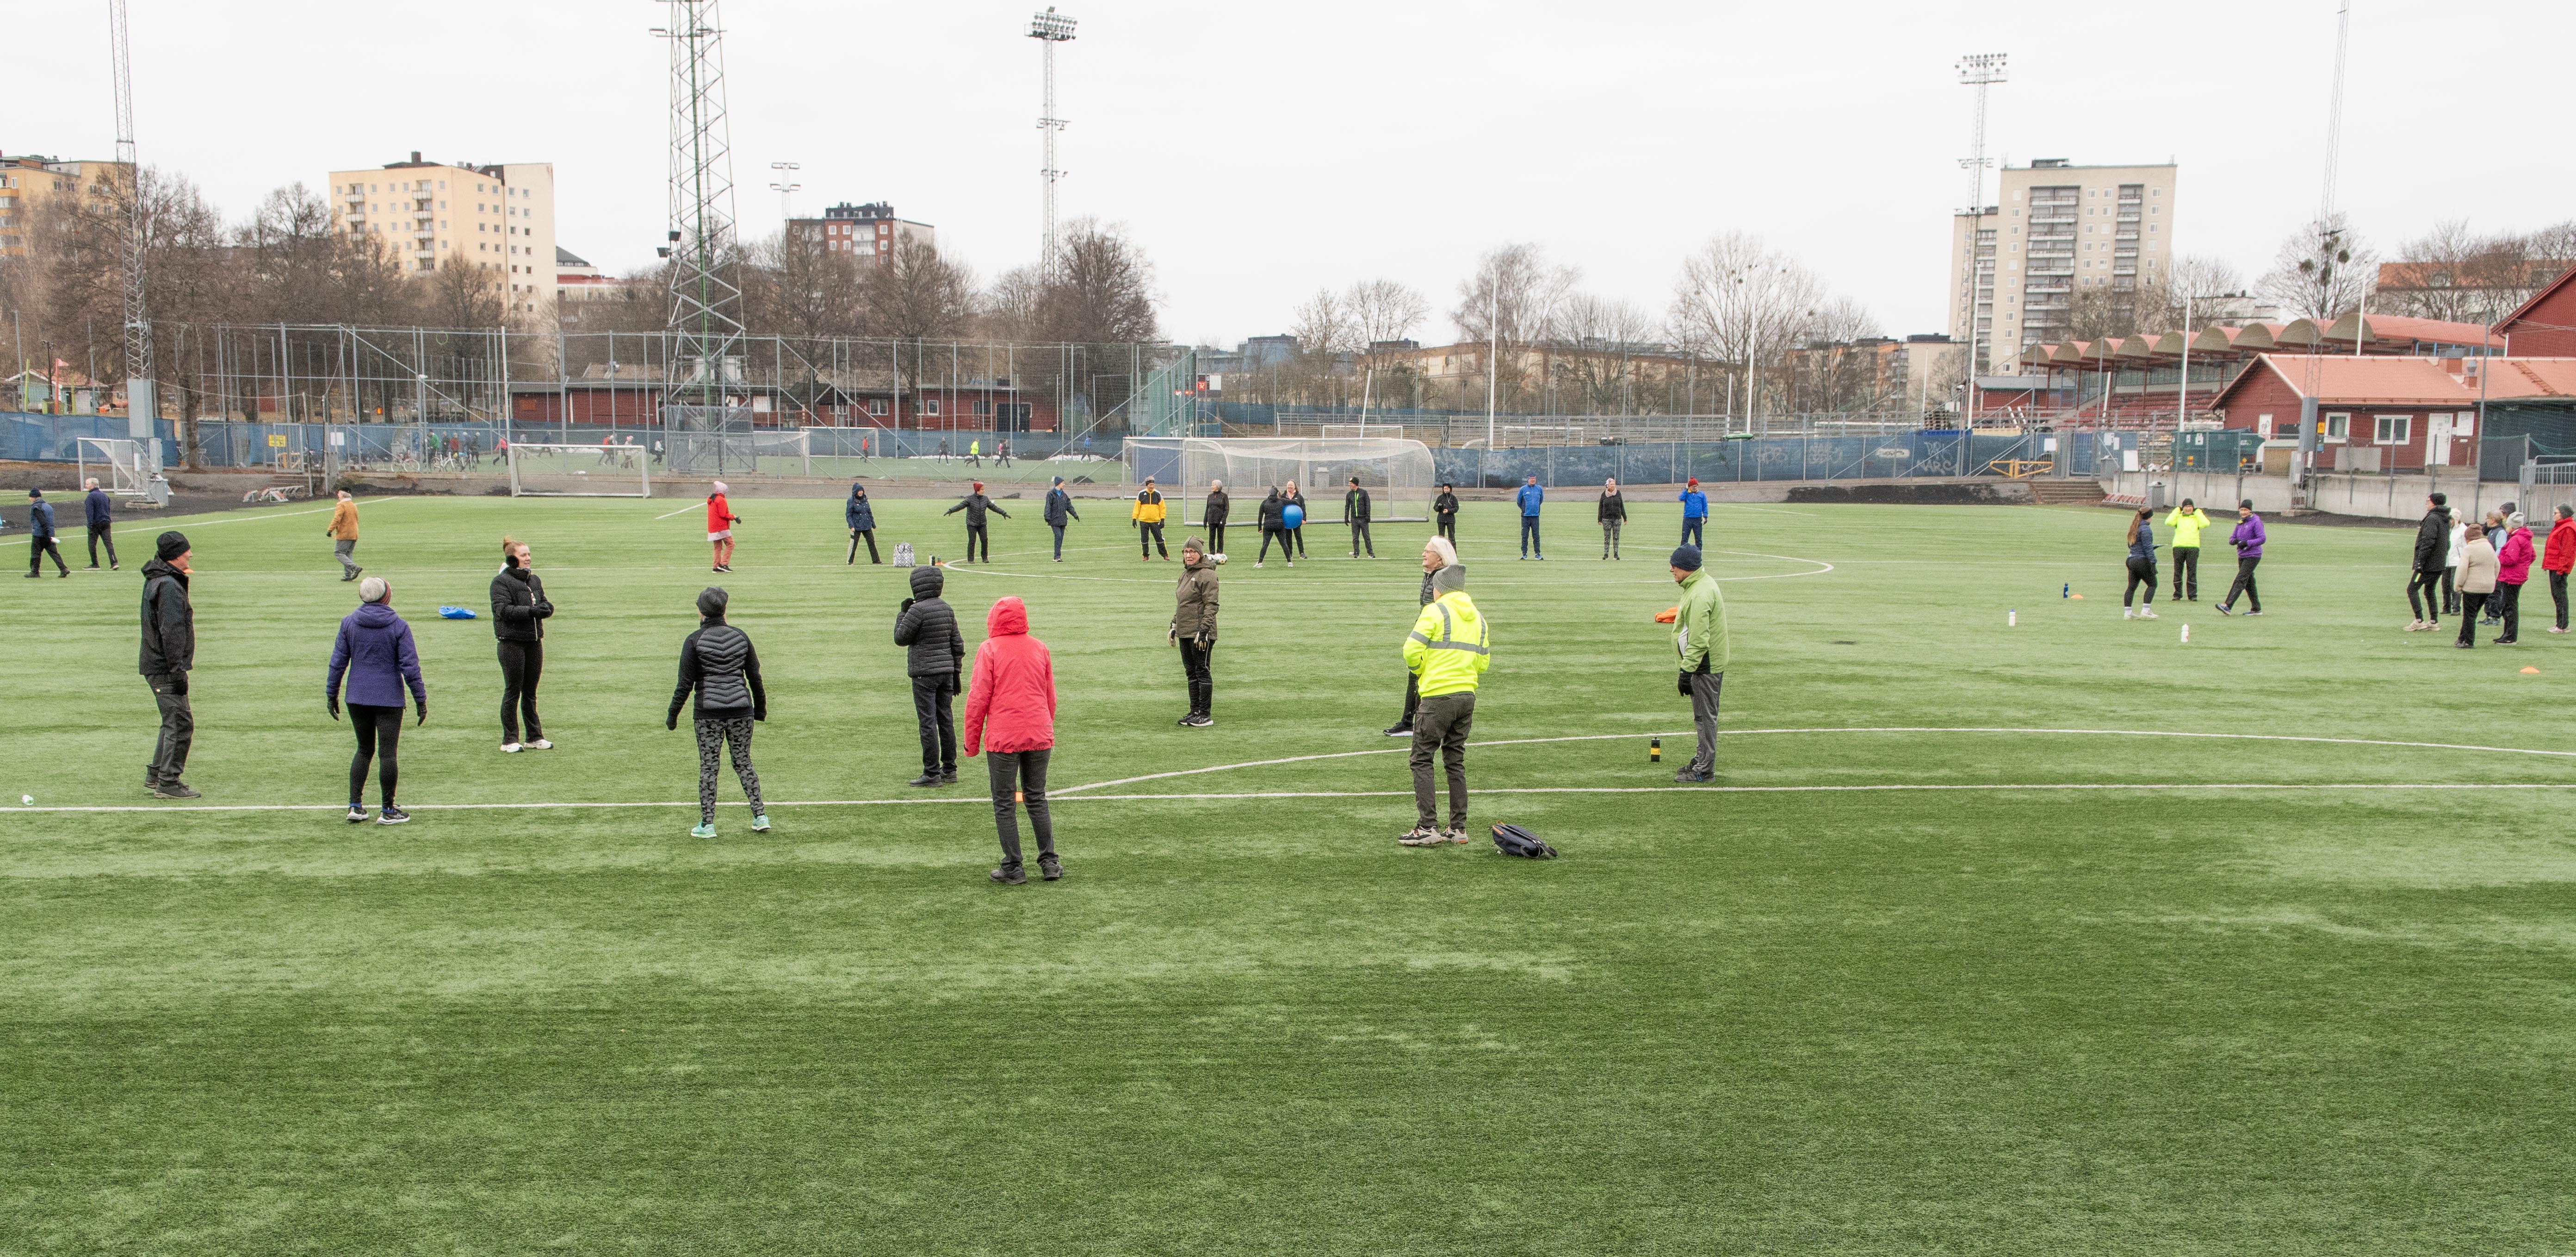 Flera grupper gör övningar på fotbollsplanen